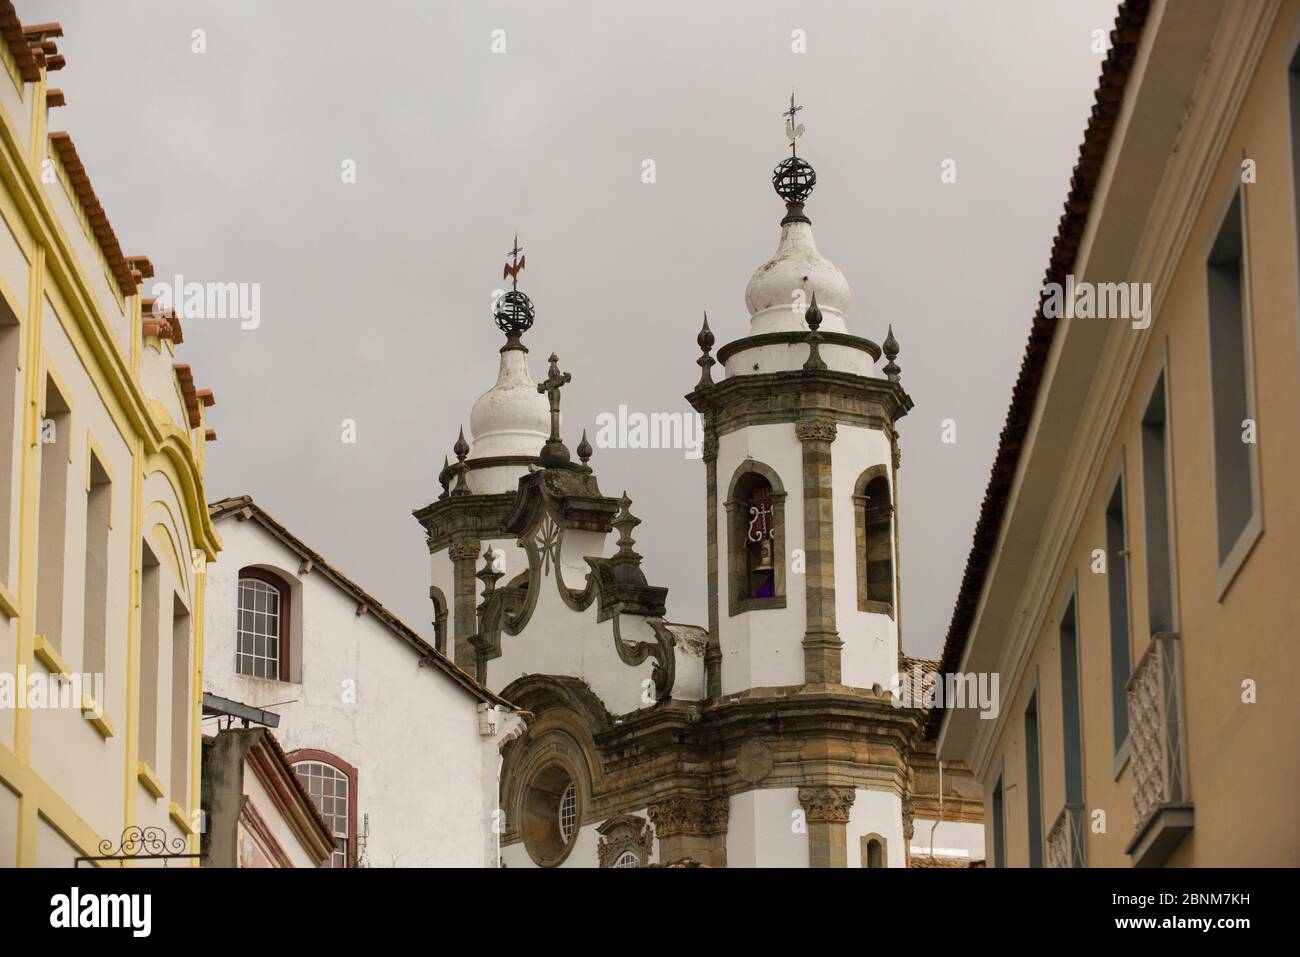 Sao Joao del Rei, Minas Gerais, Brasilien - 05. März 2016: Turm der Kirche des heiligen Franz von Assisi im historischen Zentrum von Sao Joao del Rei Stockfoto